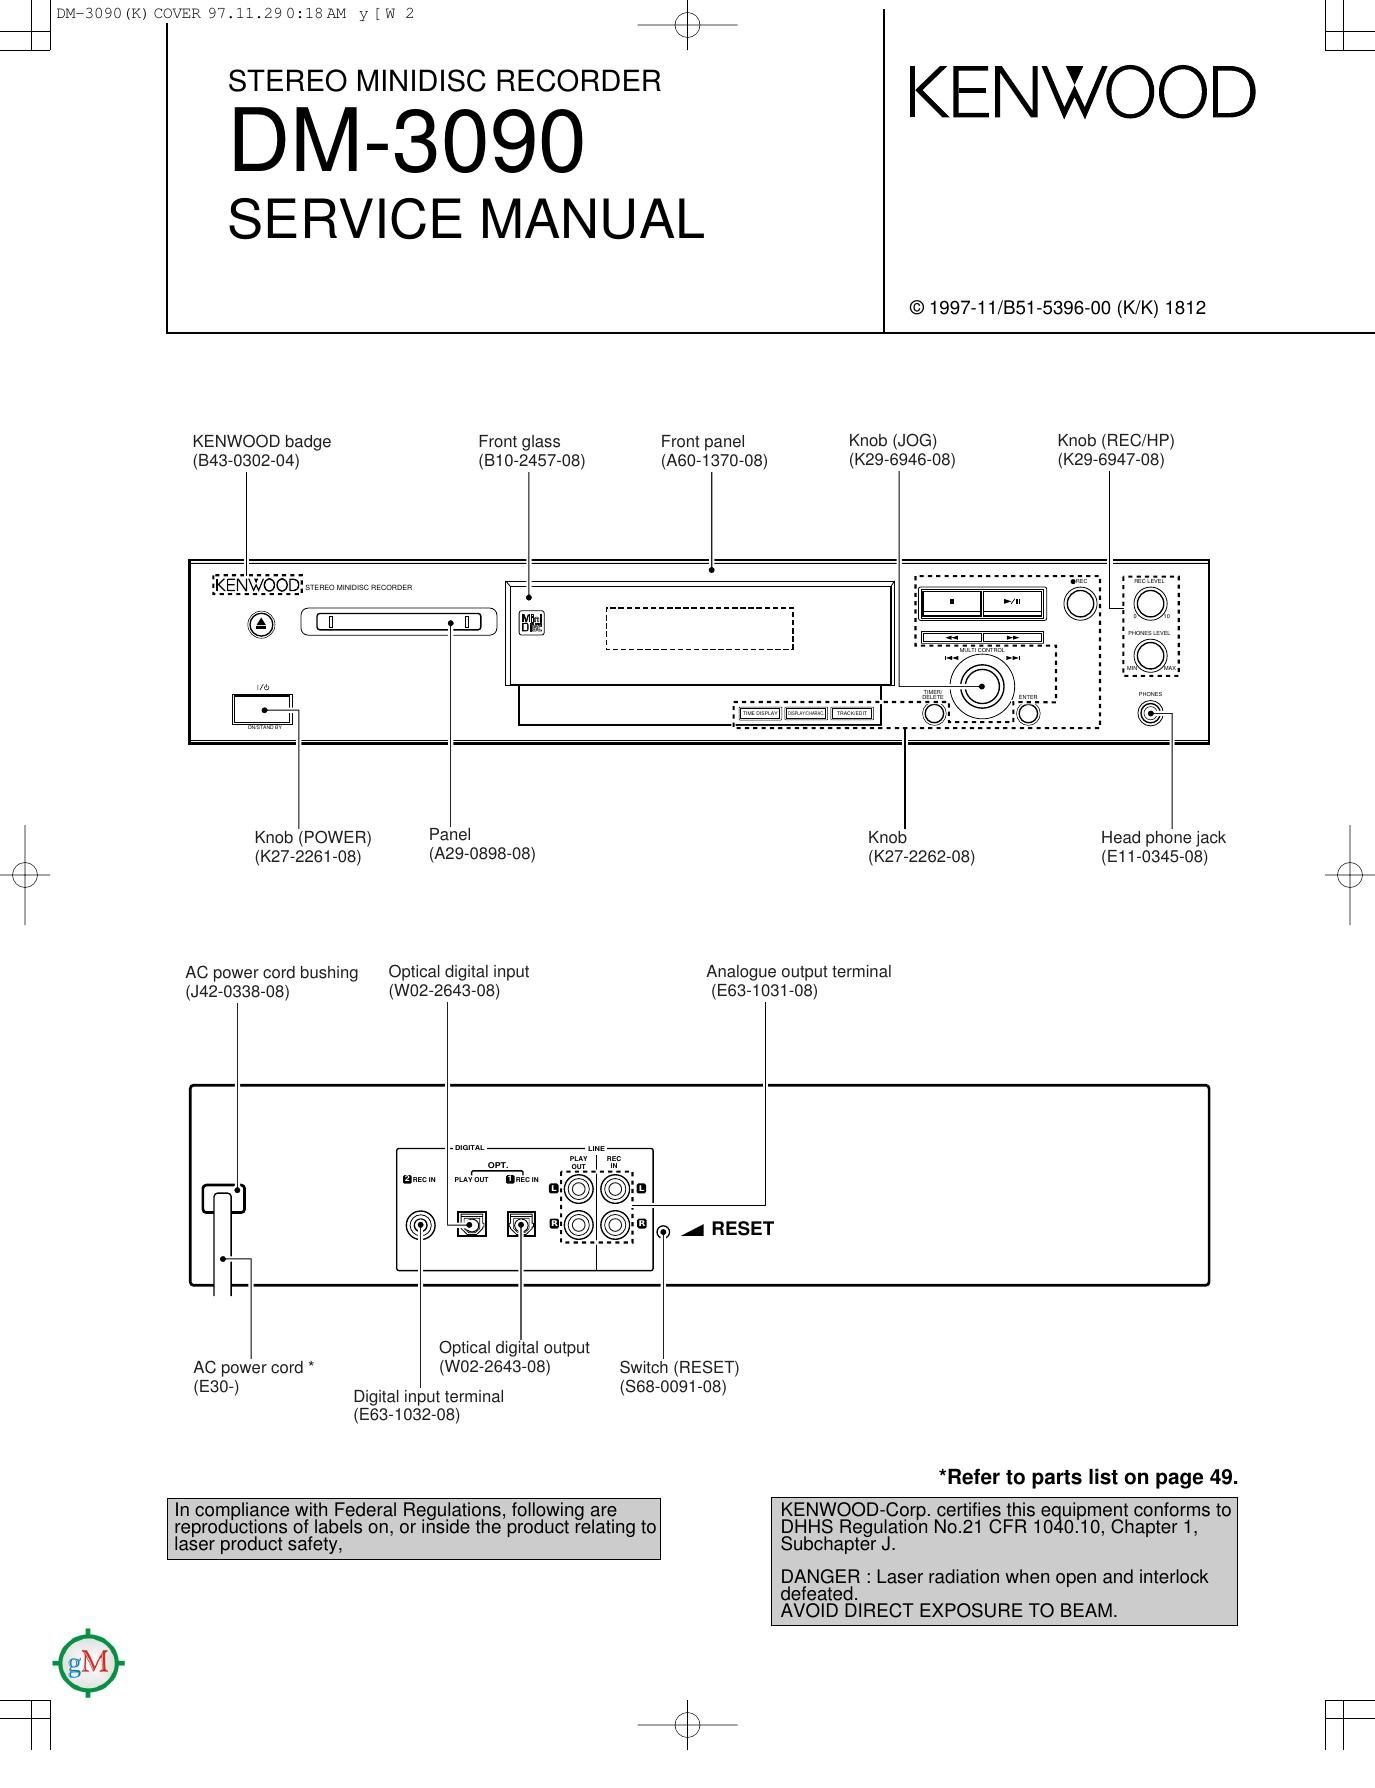 Kenwood DM 3090 Service Manual